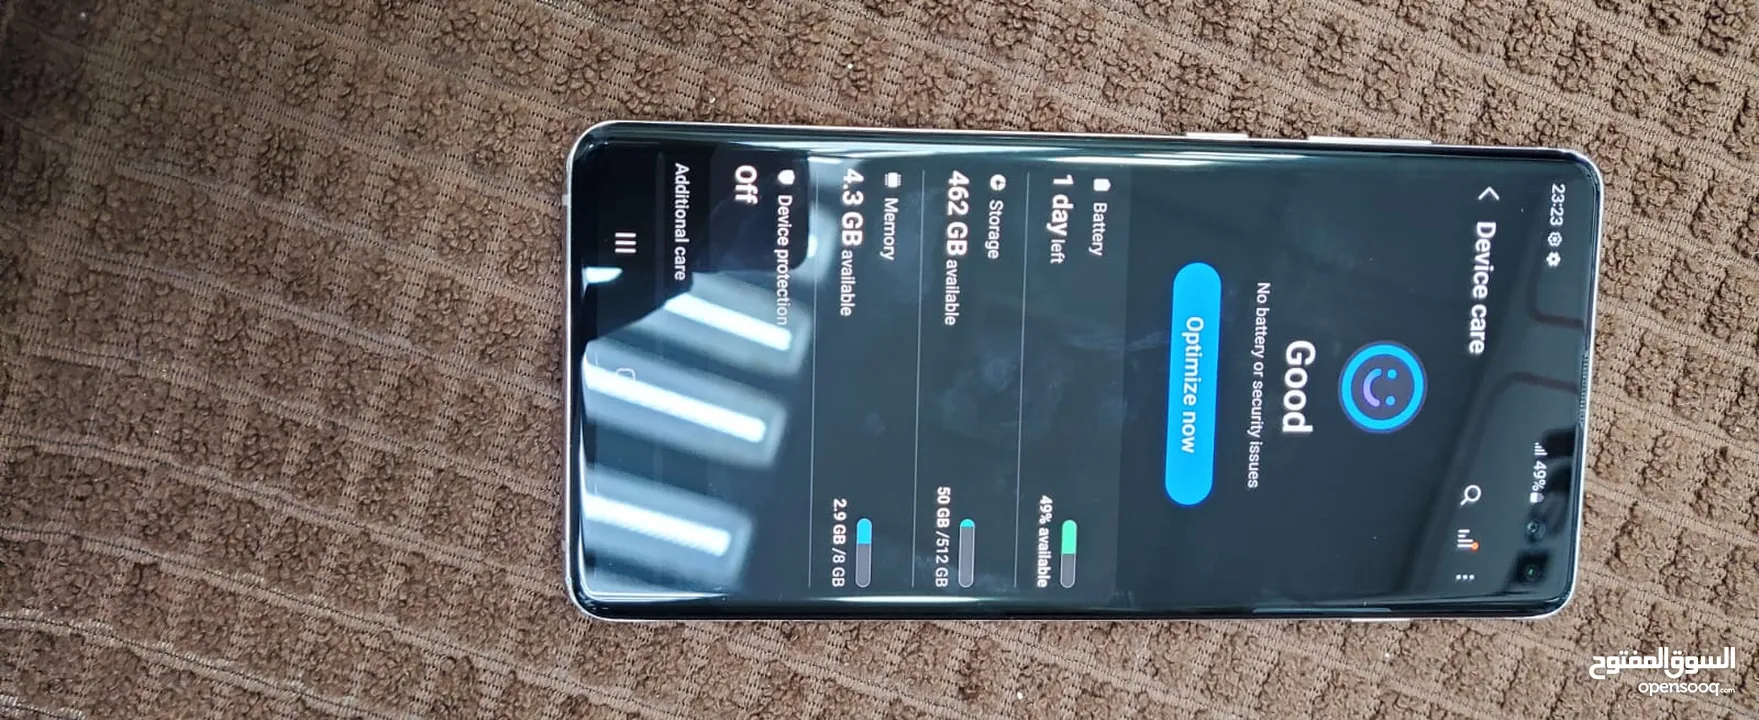 Samsung Galaxy S10 plus 8/512 gb special edition condition 10/10